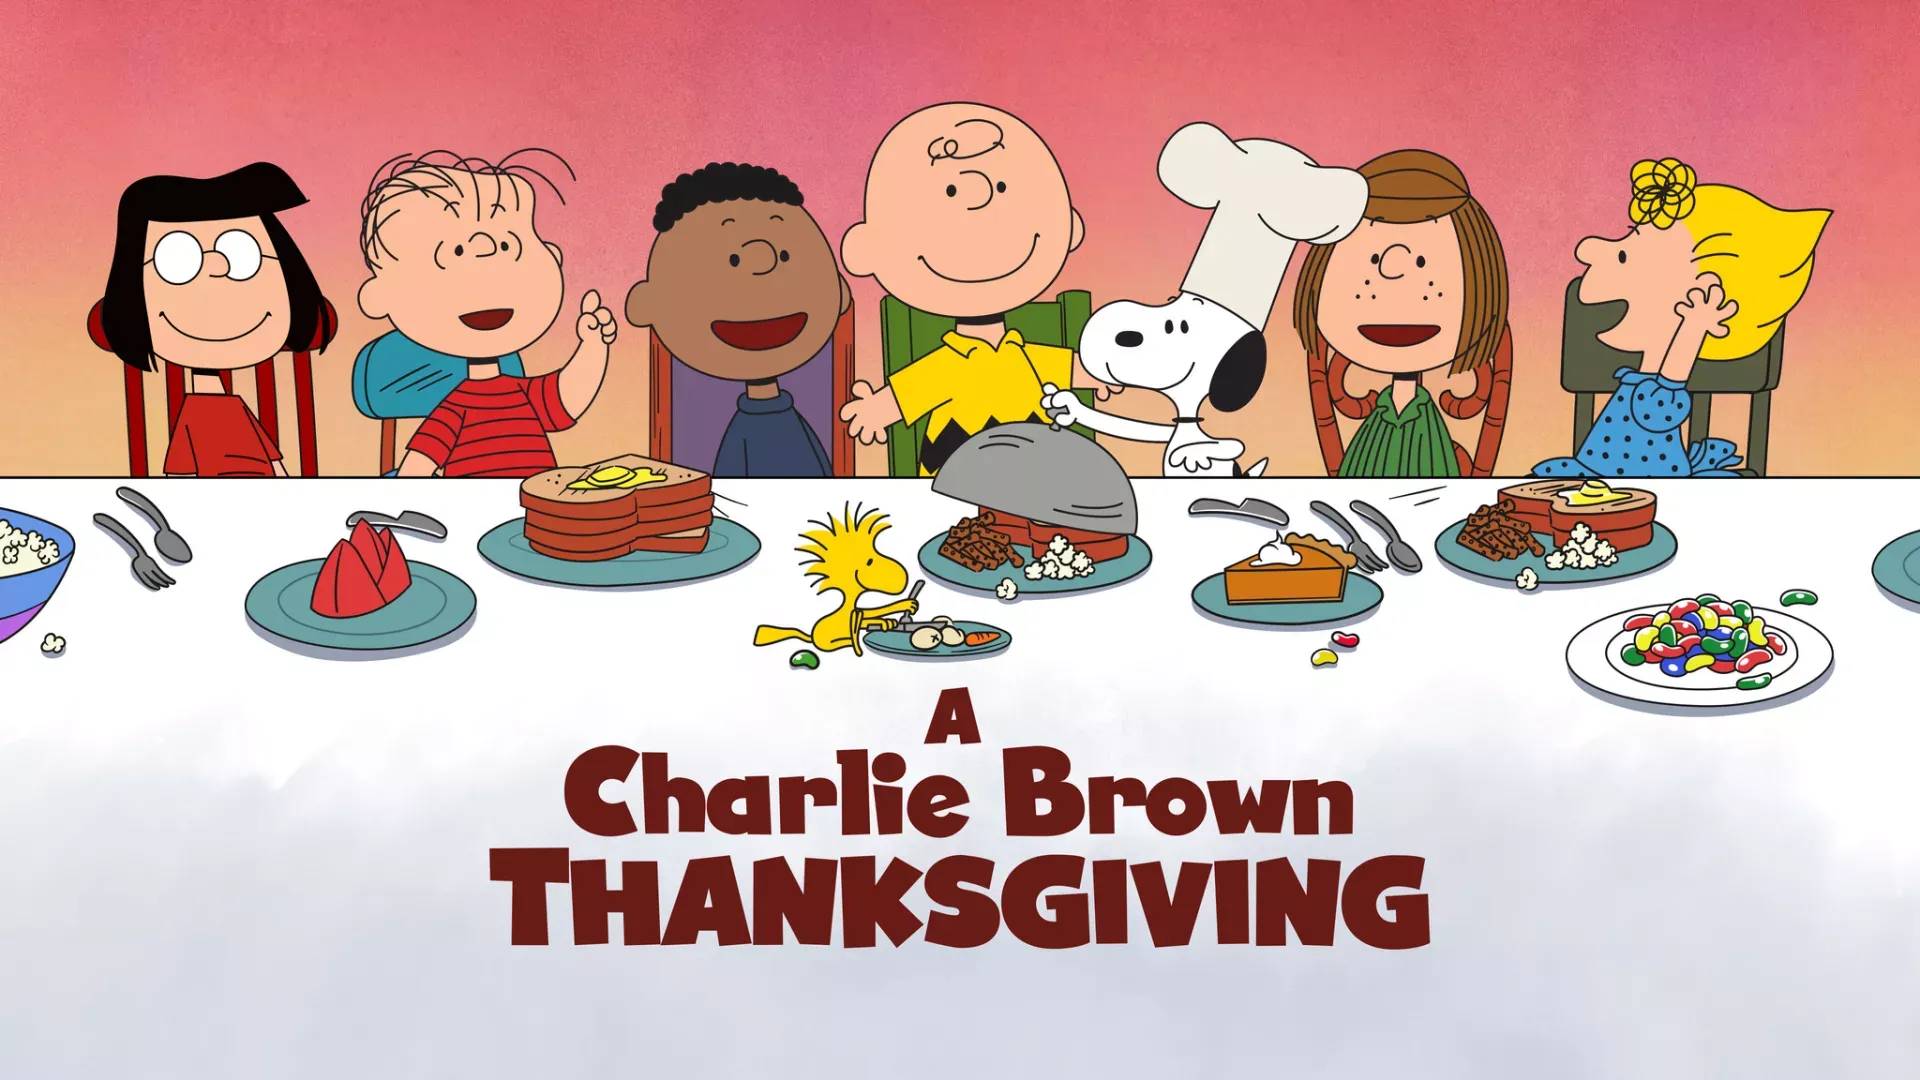 В Apple TV+ можно бесплатно посмотреть «День благодарения Чарли Брауна»